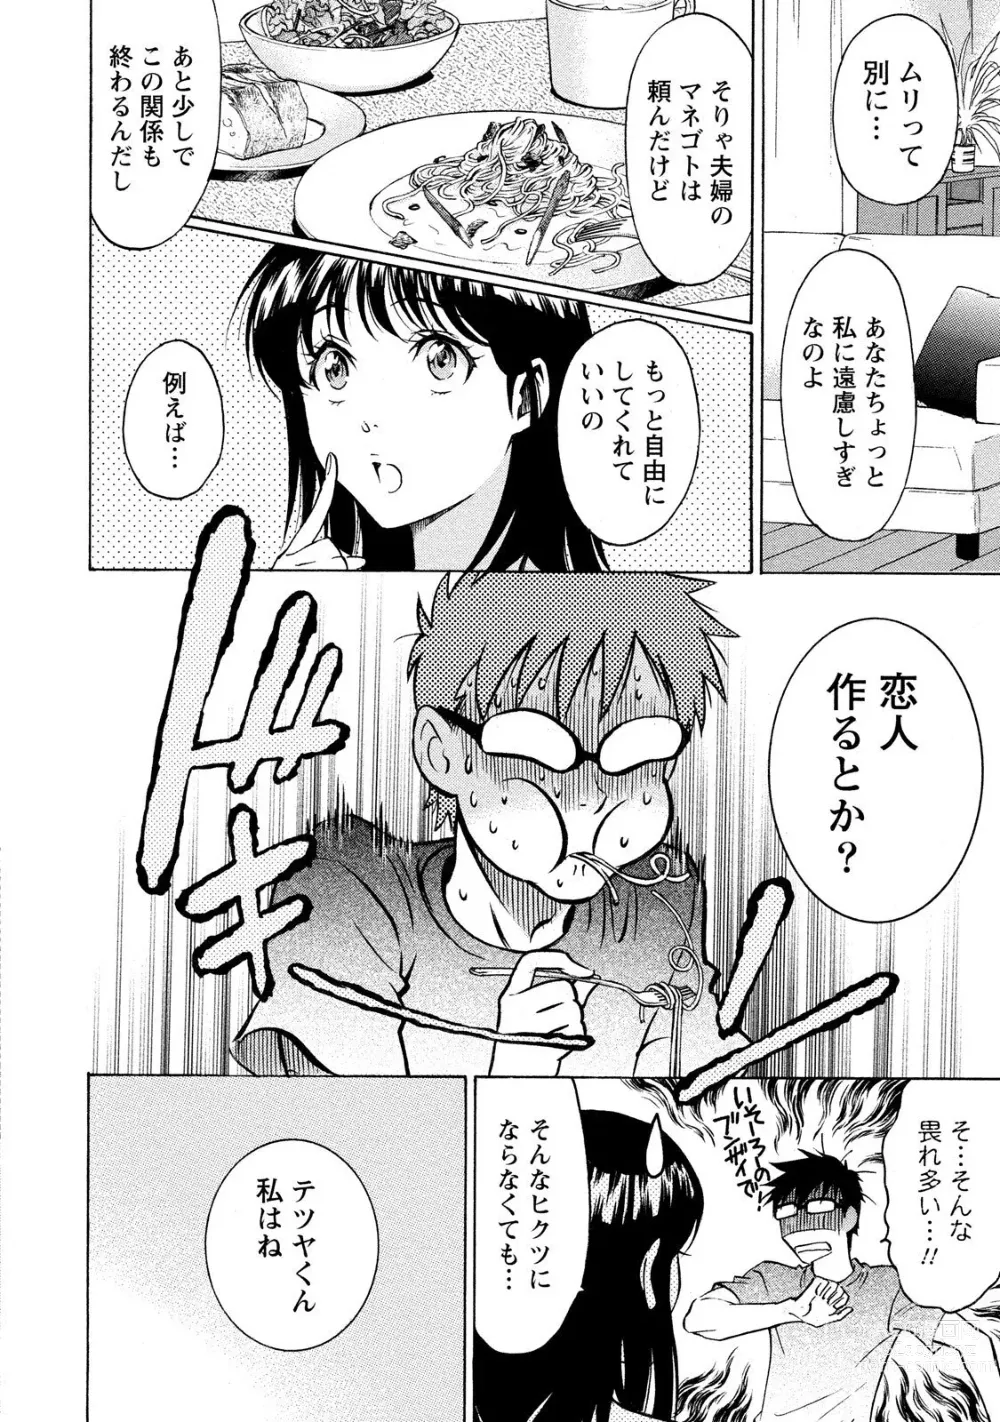 Page 14 of manga Nisekon! 2